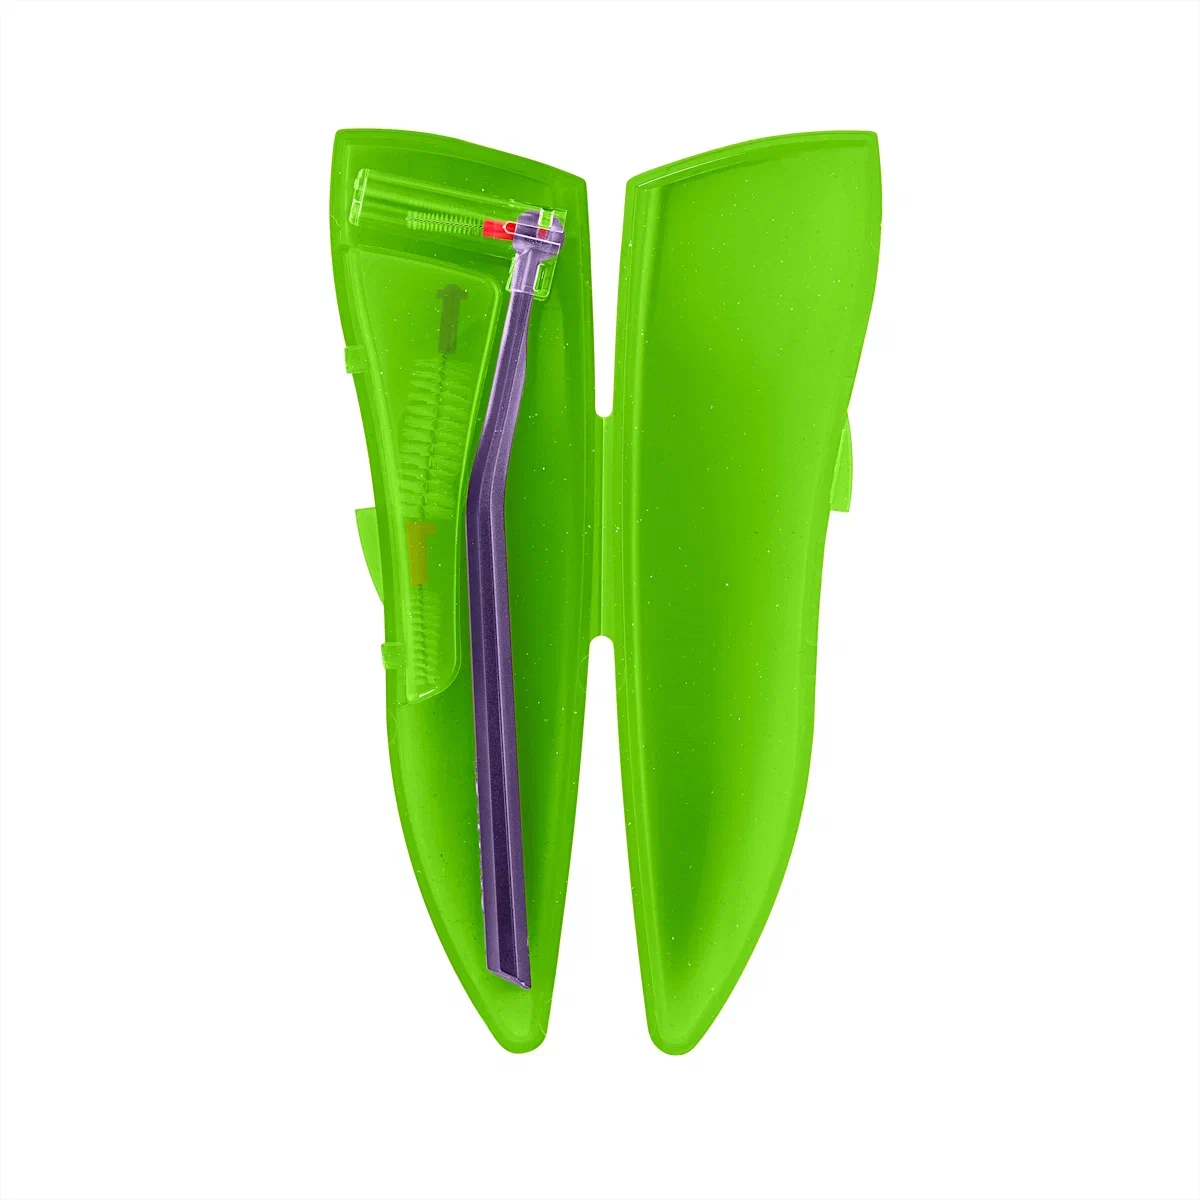 Набор для гигиенического ухода Curaprox ортодонтический, с держателем UHS470, зелёный набор для вскармливания пушистое счастье для щенят бутылочка 60 мл ершик соски